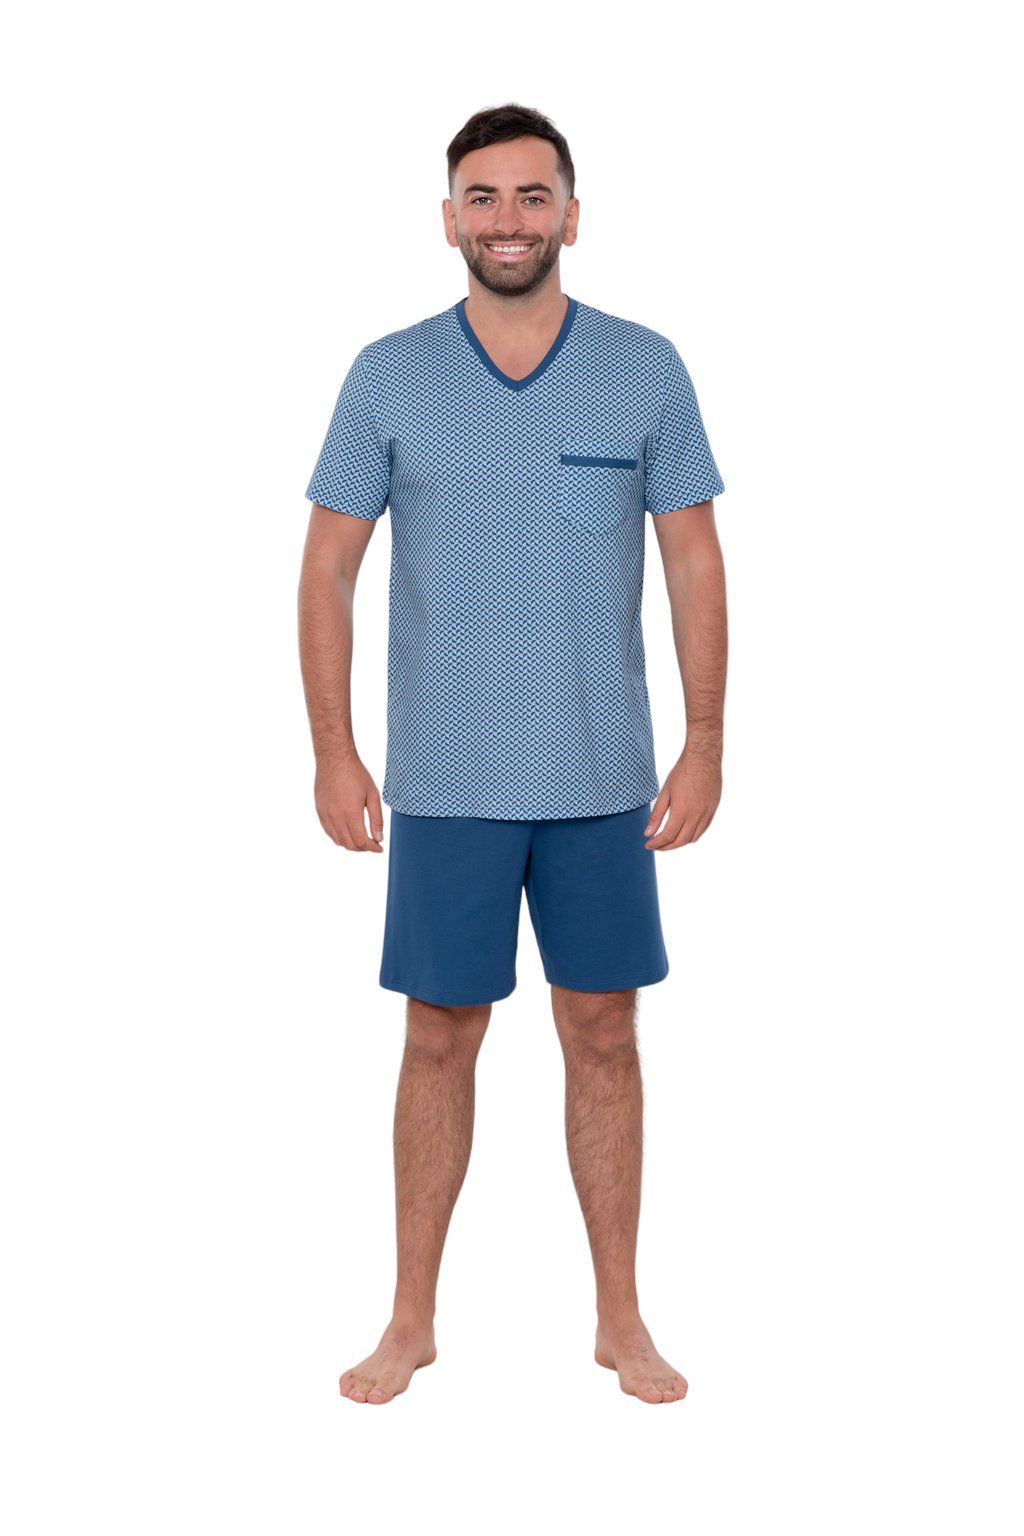 Pánské pyžamo s krátkým rukávem, 204132 259, modrá Wadima